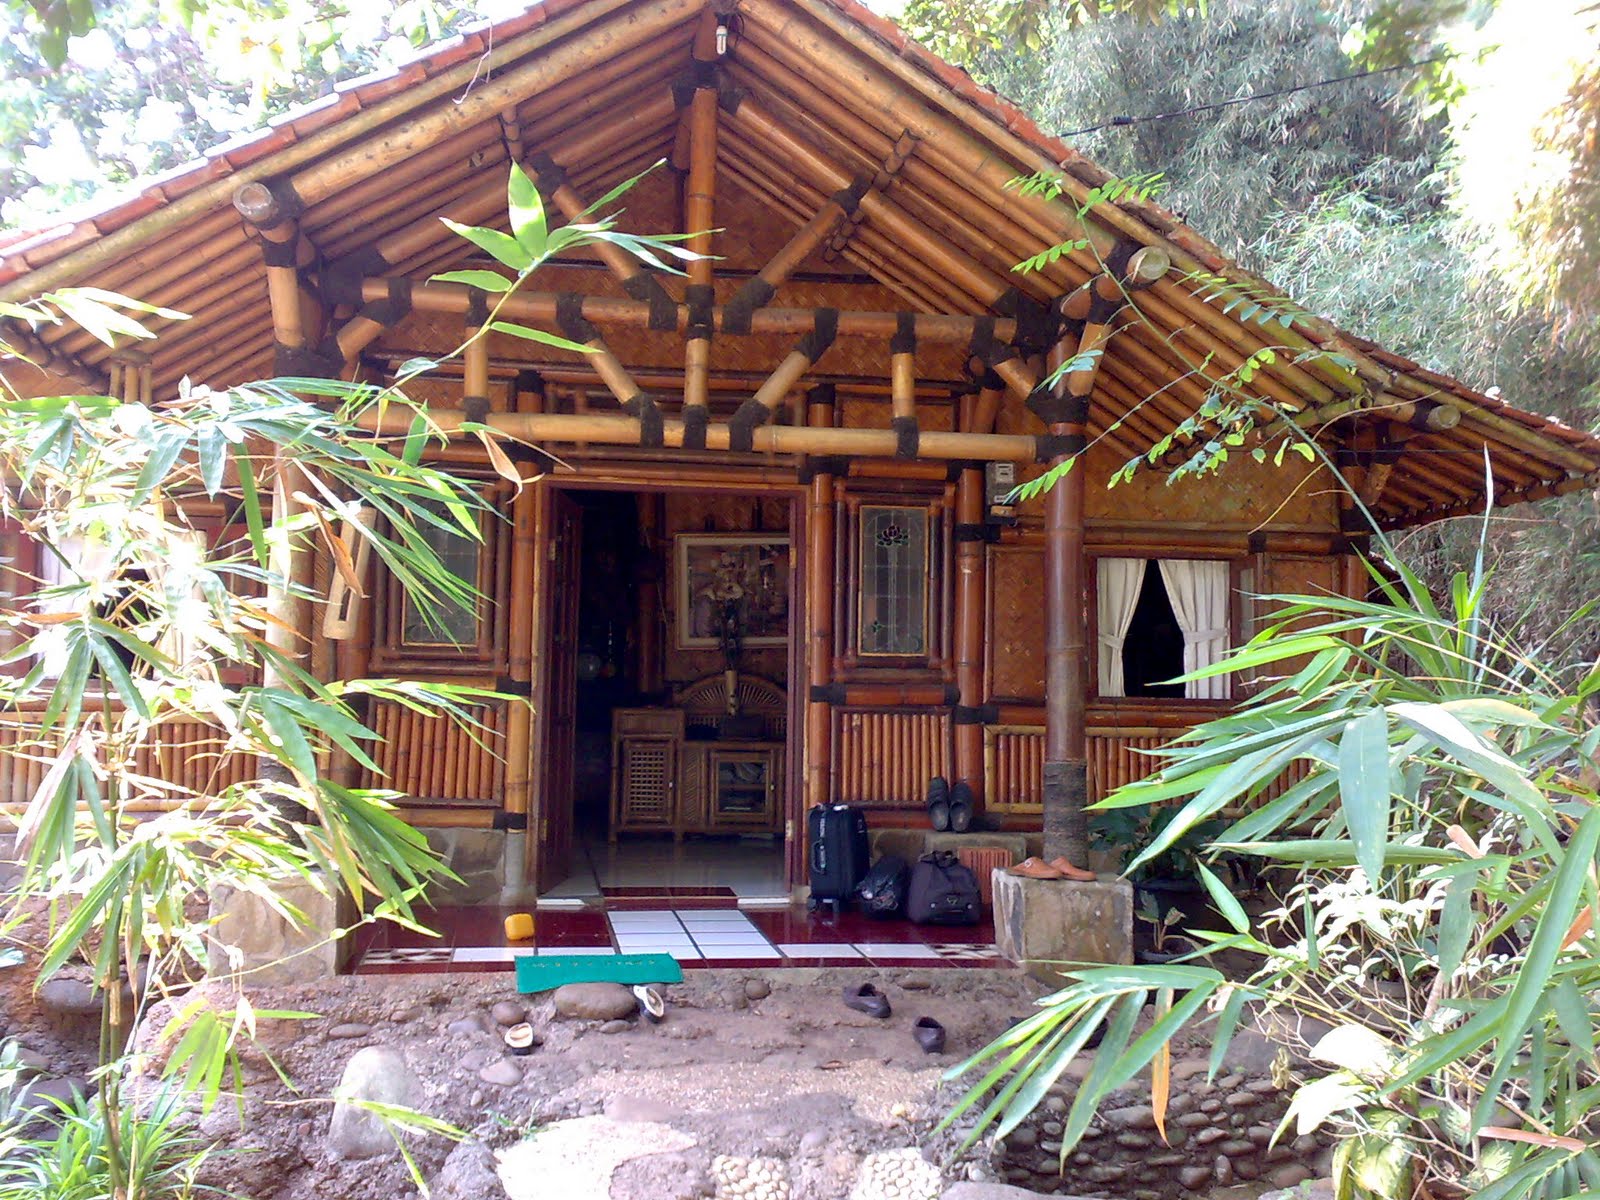 218 Rumah Bambu Sederhana Modern Gambar Rumah Idaman